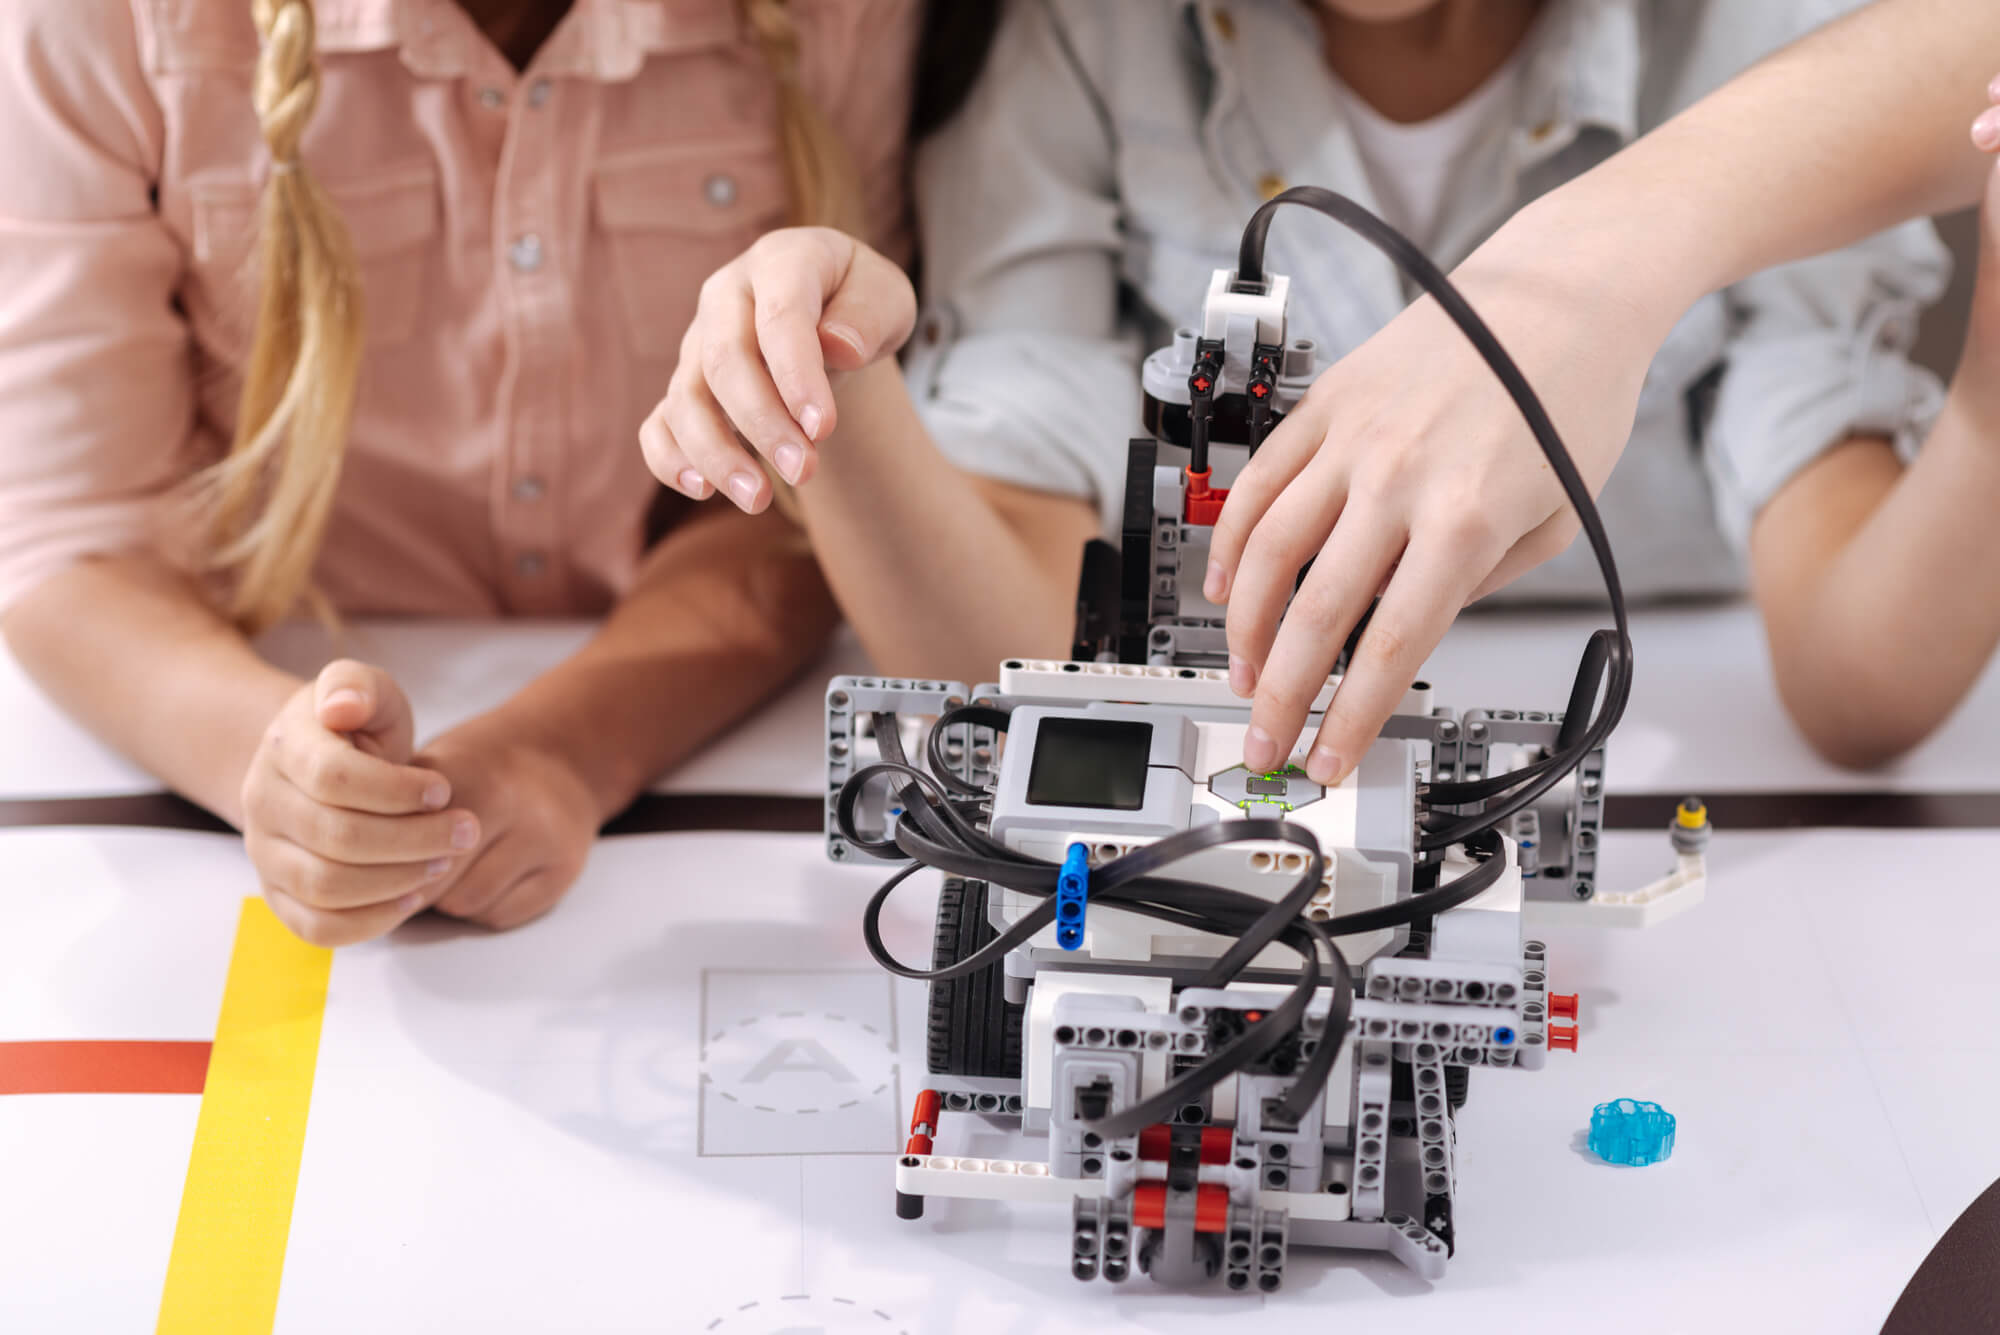 Identifique as competências que a robótica estimula nos estudantes